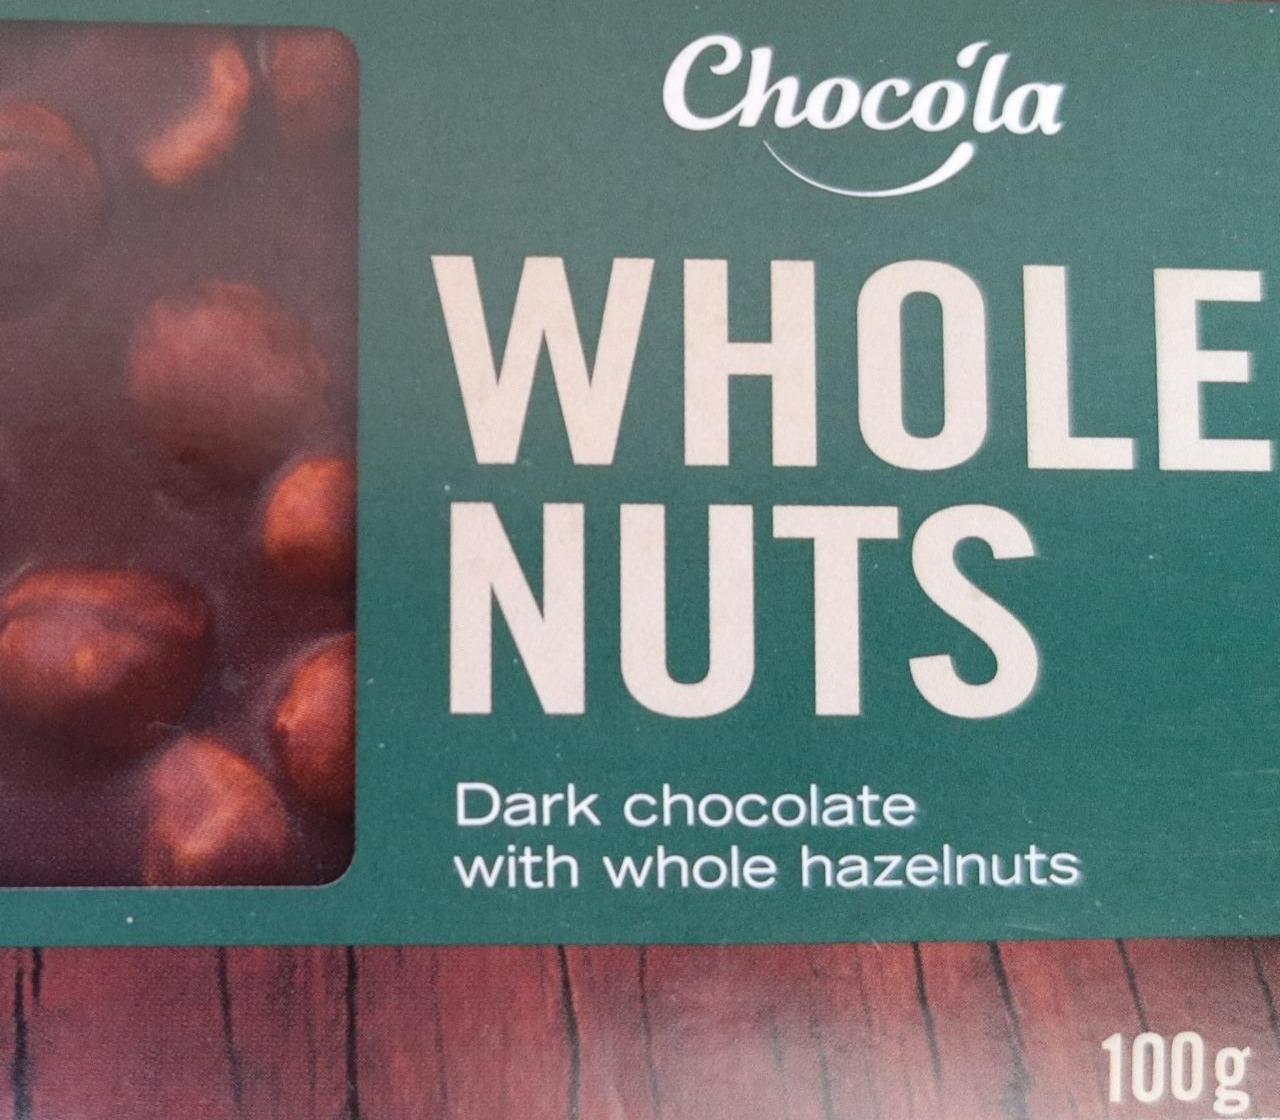 Képek - Dark chocolate with whole hazelnuts Chocola